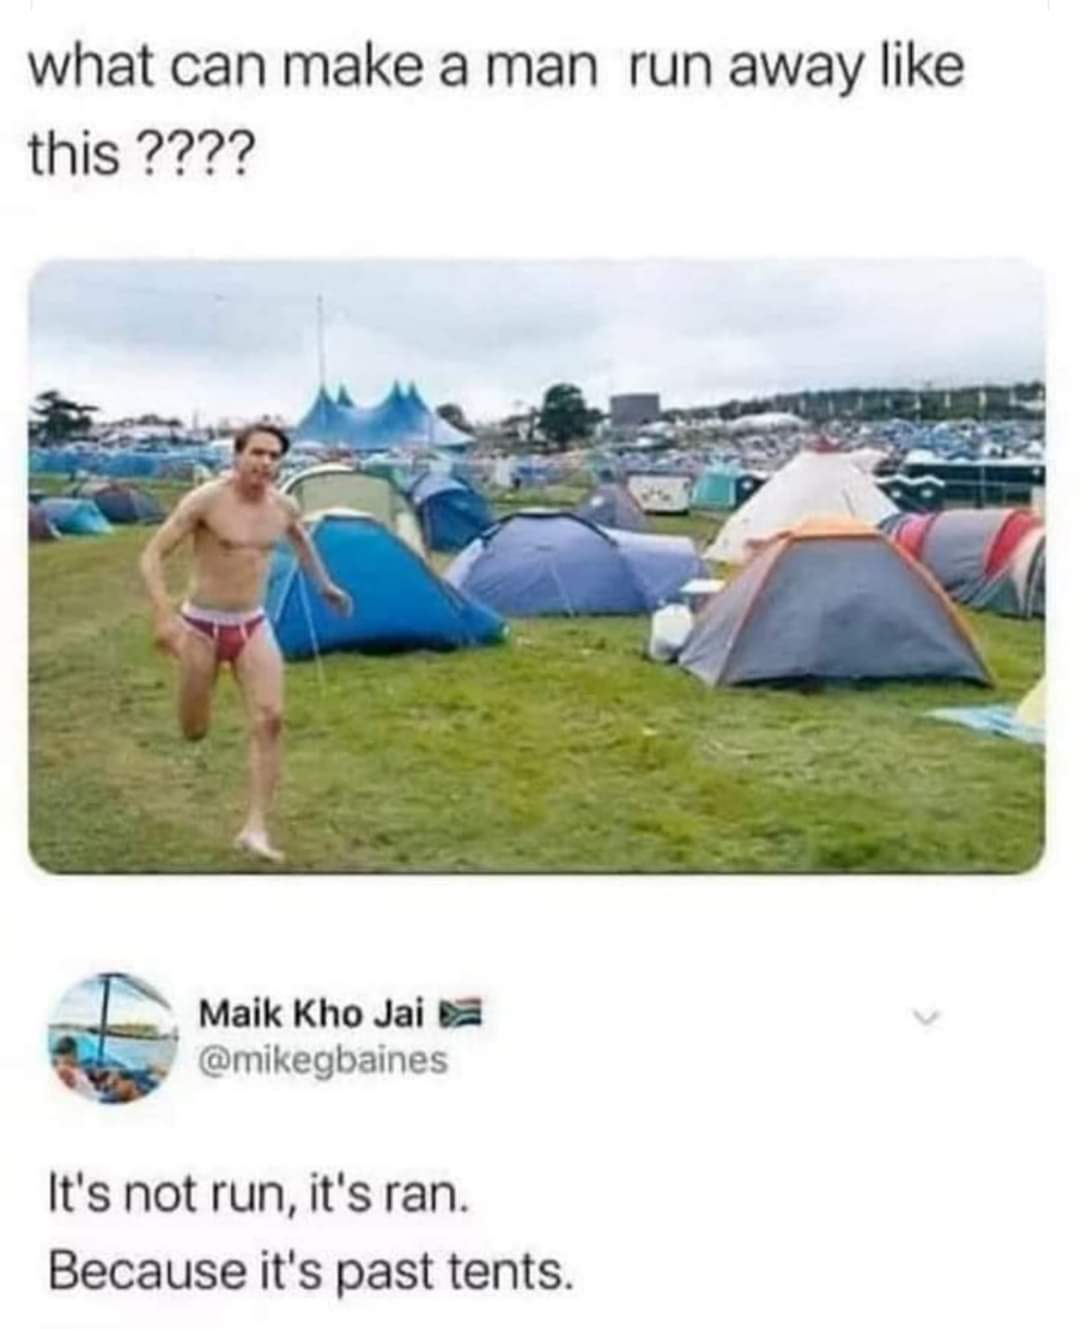 Past tents lol - meme